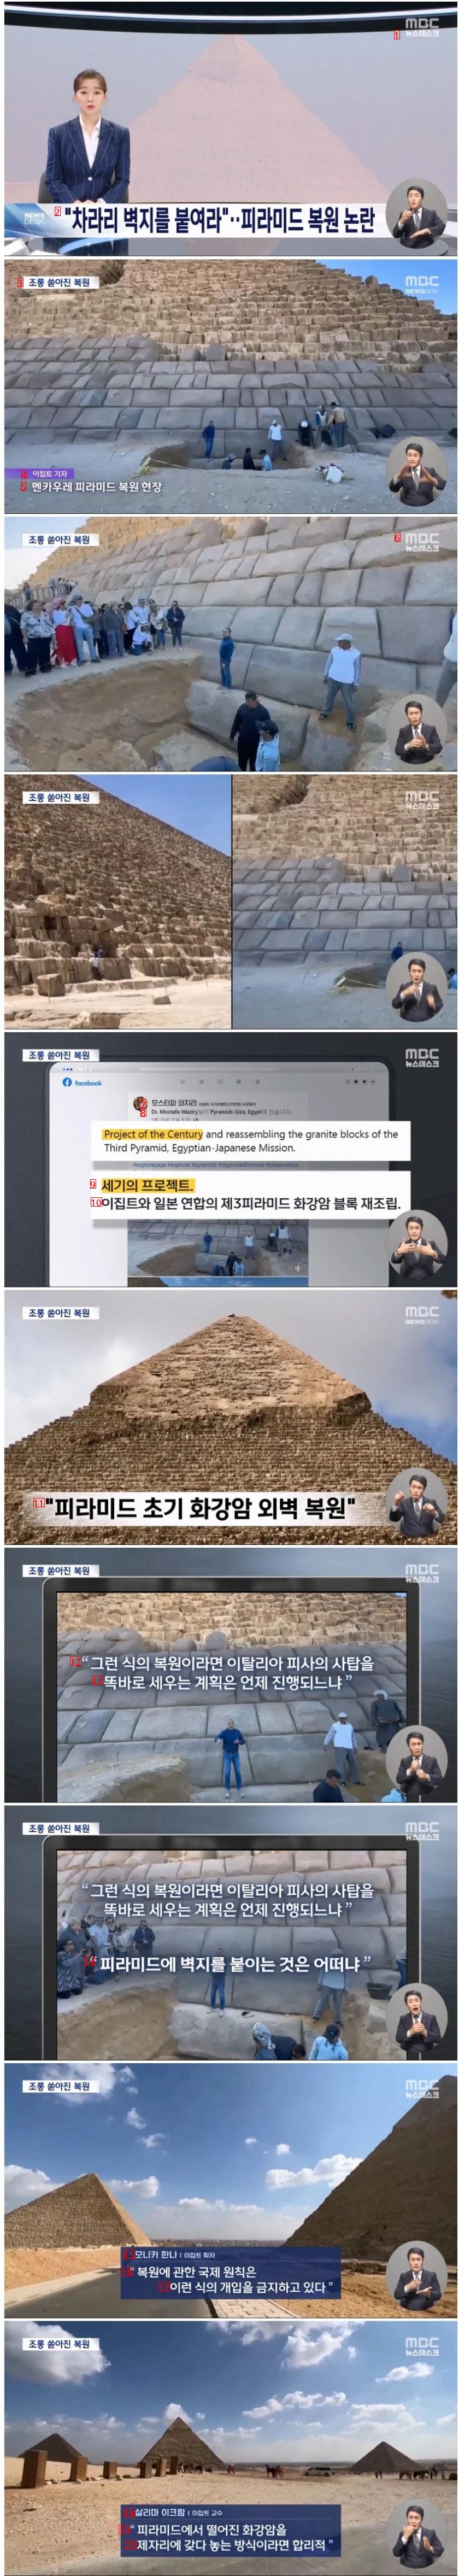 議論の的となっているピラミッドの復元状況